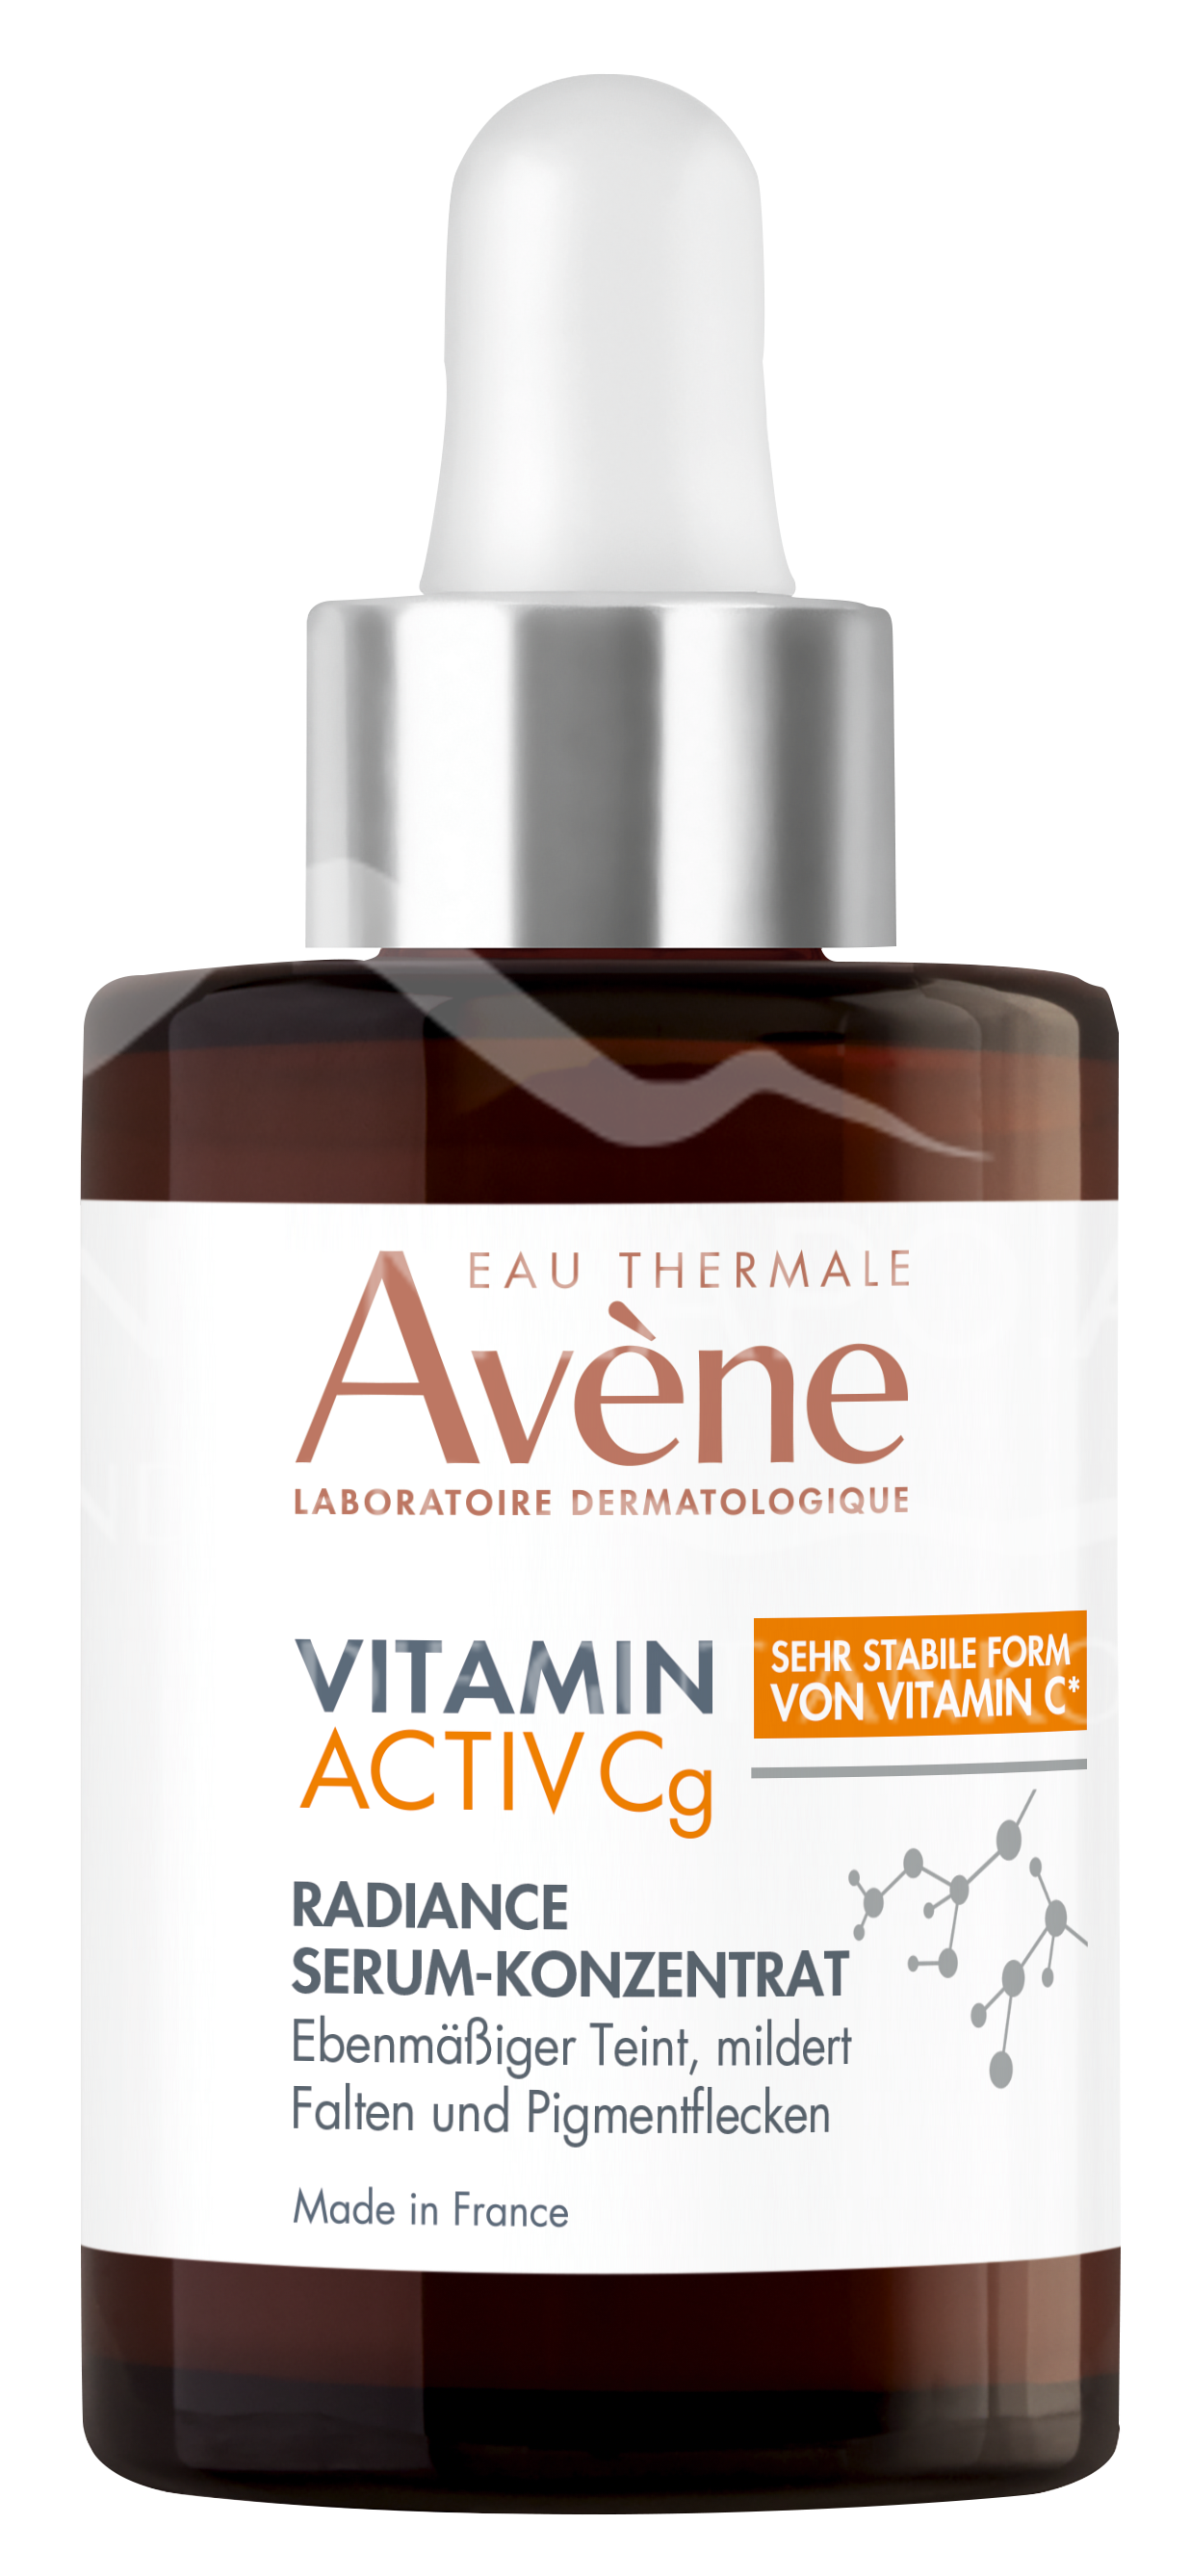 Avene VITAMIN ACTIV Cg Radiance Serum-Konzentrat